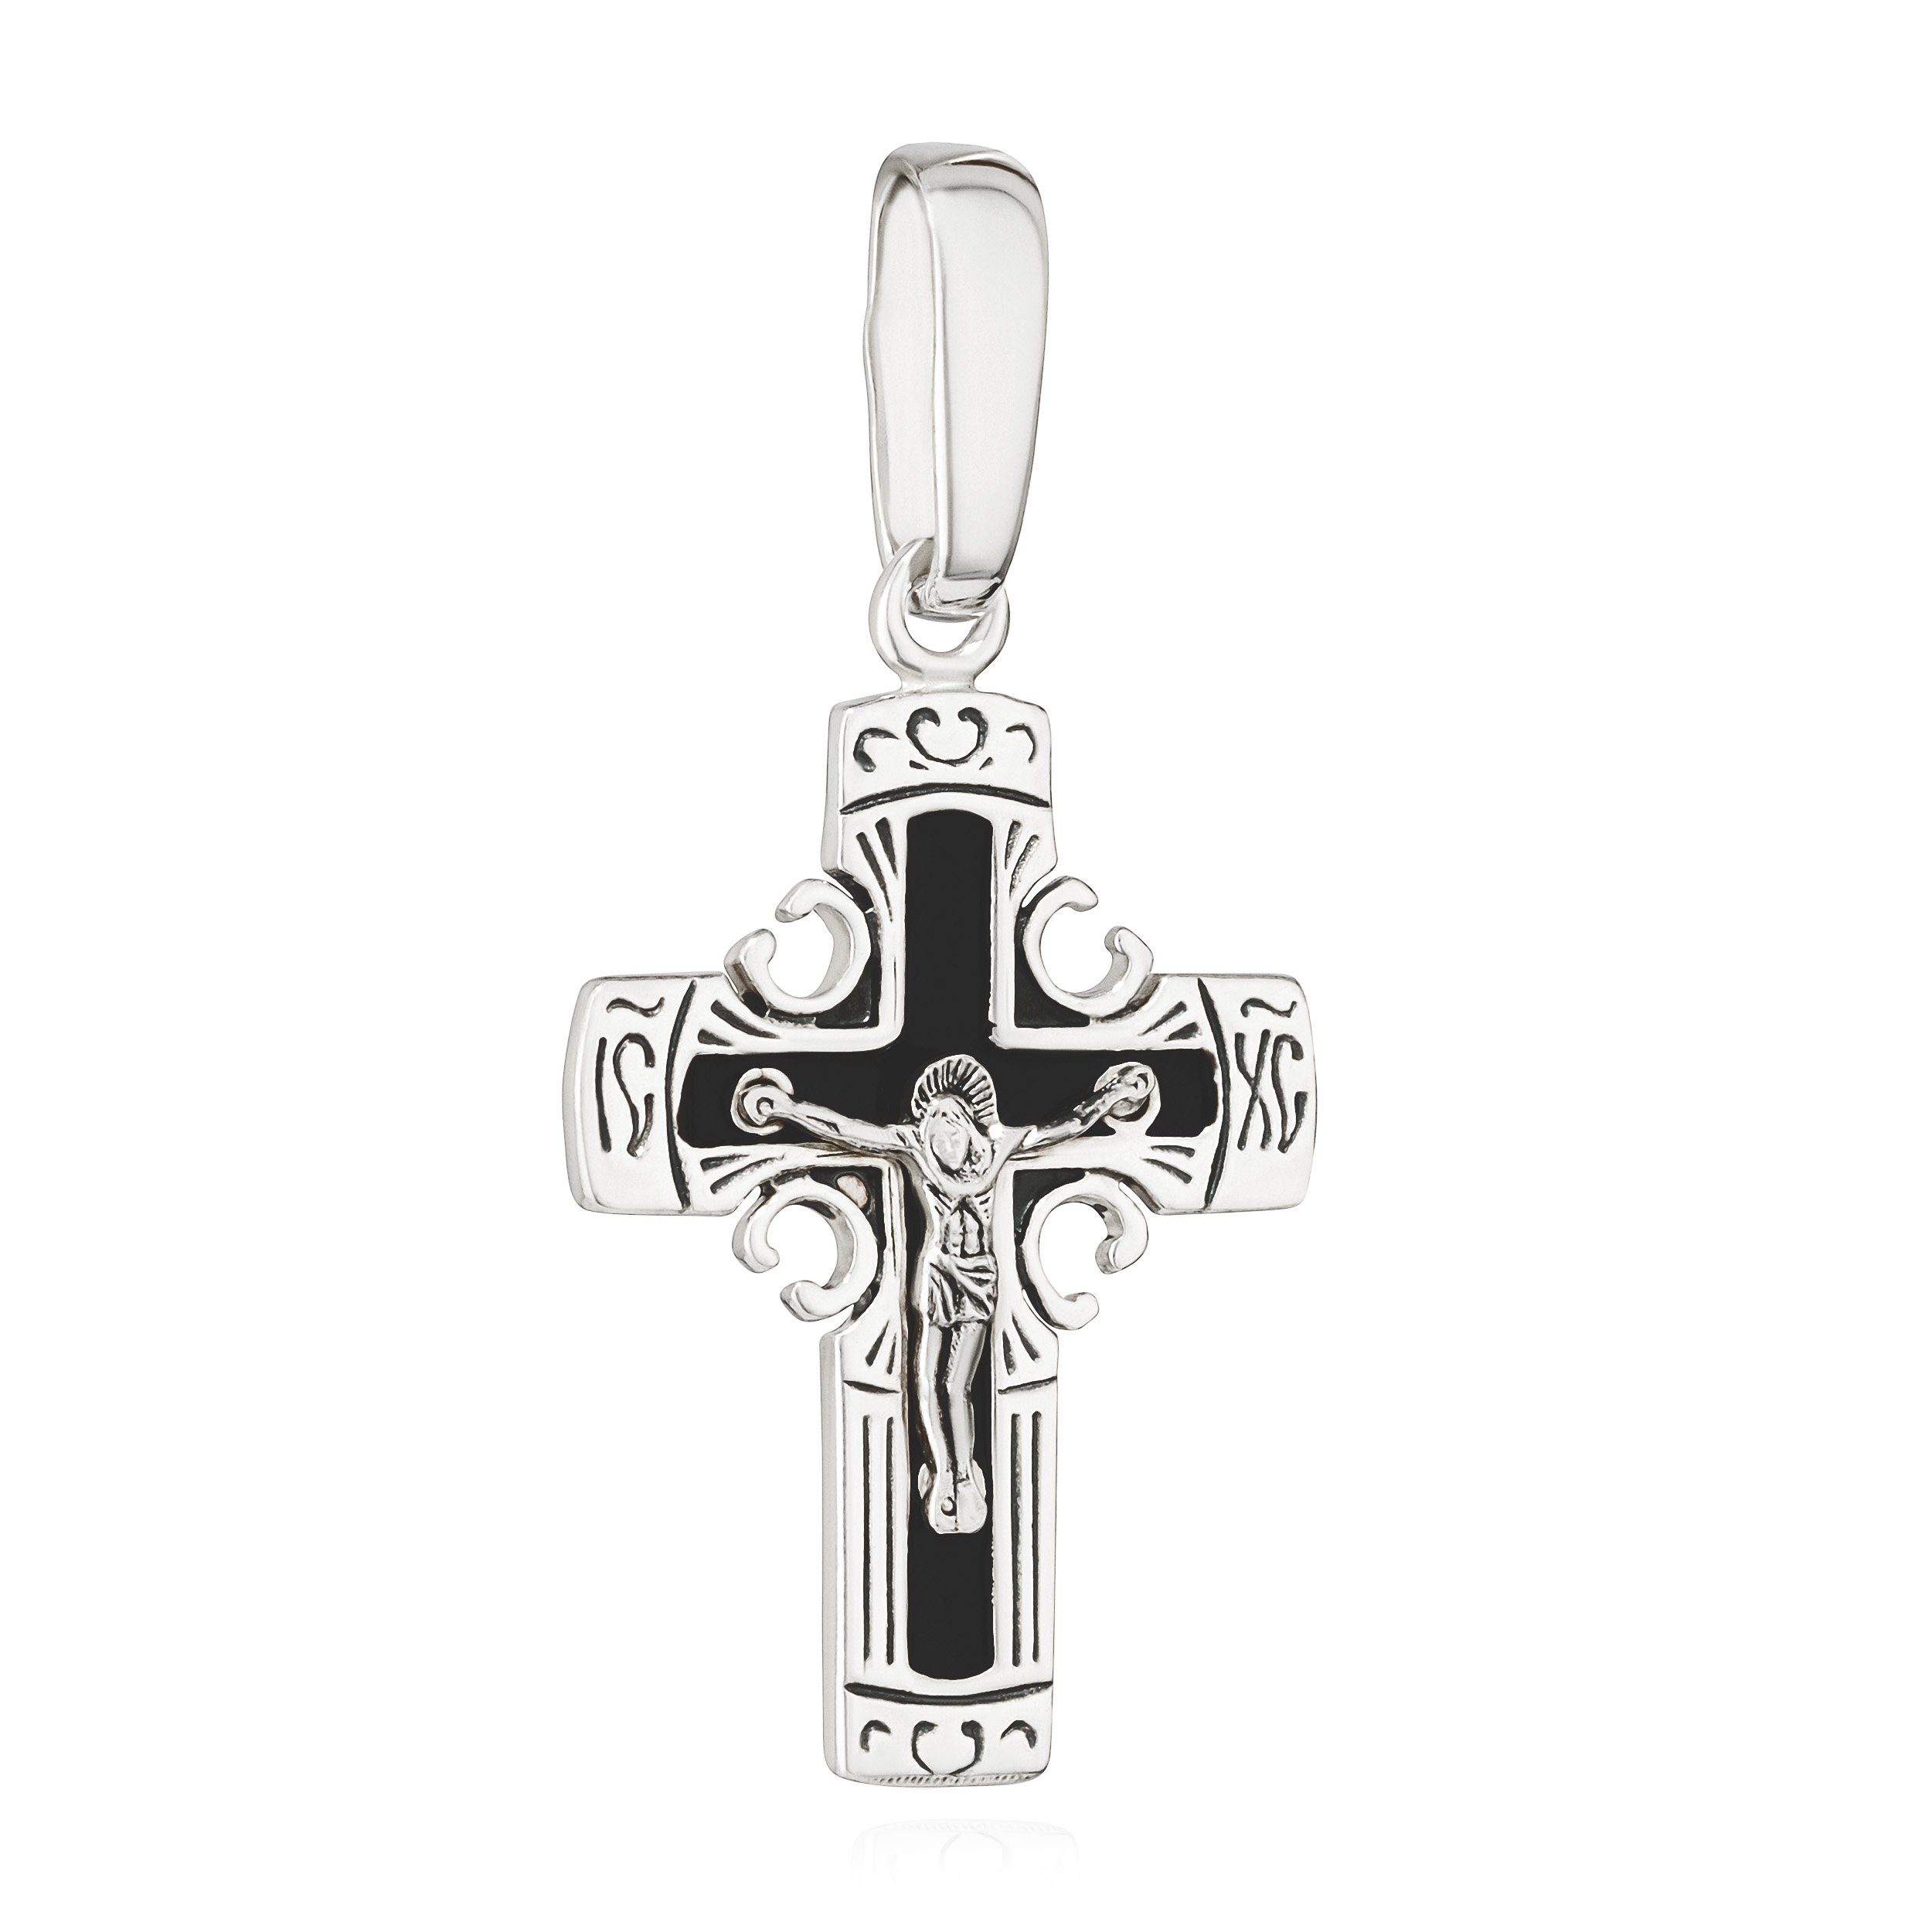 NKlaus Kettenanhänger 925 Silber Kreuzanhänger 25mm x 18,6mm Kruzifix Anhänger Jesus Christu